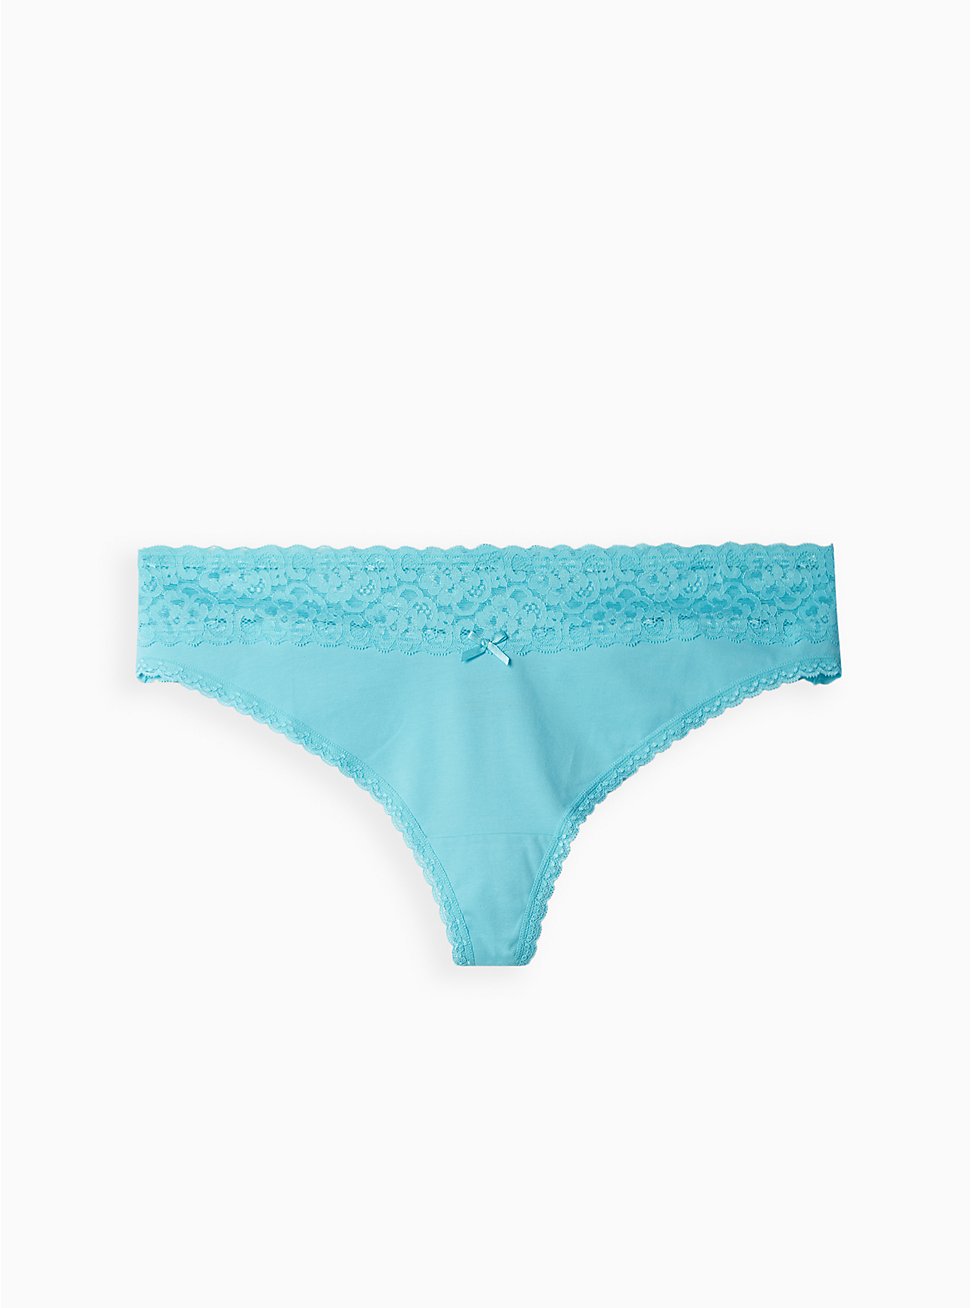 Wide Lace Trim Thong Panty - Cotton Blue, BLUE RADIANCE, hi-res